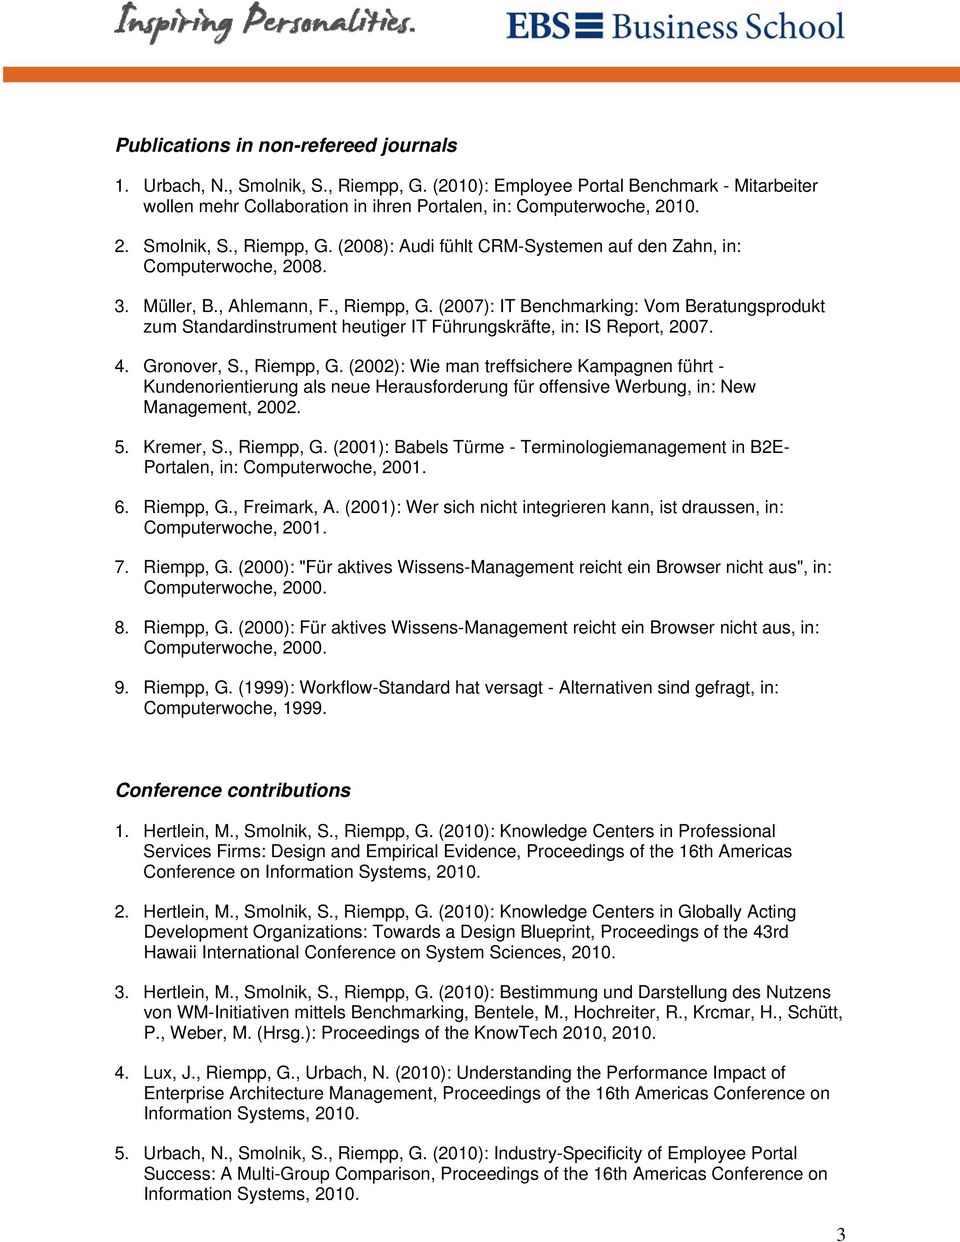 4. Gronover, S., Riempp, G. (2002): Wie man treffsichere Kampagnen führt - Kundenorientierung als neue Herausforderung für offensive Werbung, in: New Management, 2002. 5. Kremer, S., Riempp, G. (2001): Babels Türme - Terminologiemanagement in B2E- Portalen, in: Computerwoche, 2001.